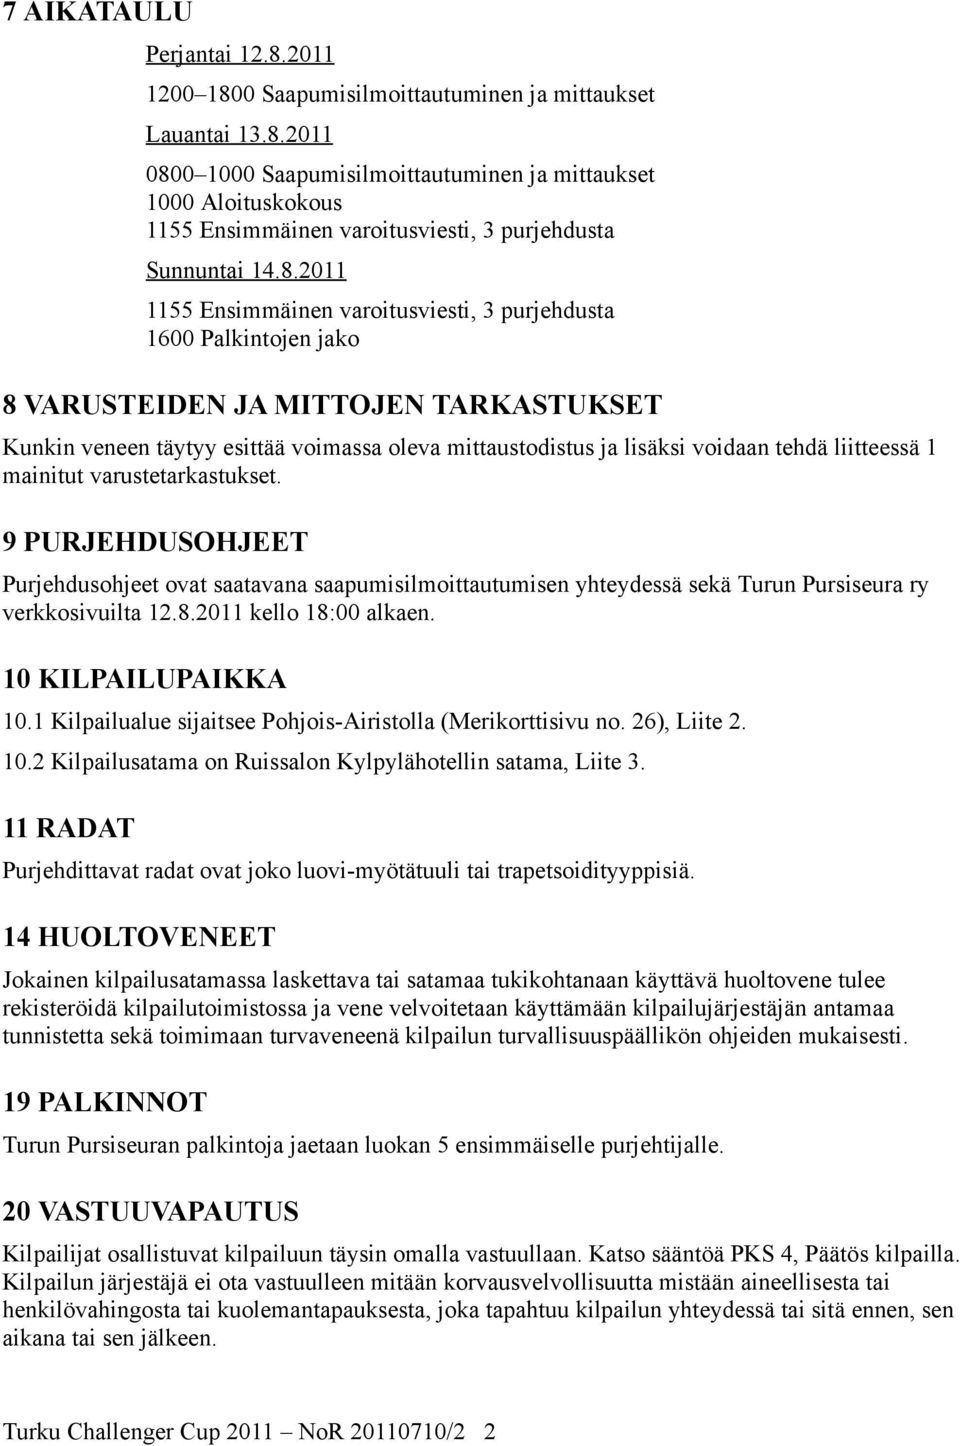 liitteessä 1 mainitut varustetarkastukset. 9 PURJEHDUSOHJEET Purjehdusohjeet ovat saatavana saapumisilmoittautumisen yhteydessä sekä Turun Pursiseura ry verkkosivuilta 12.8.2011 kello 18:00 alkaen.